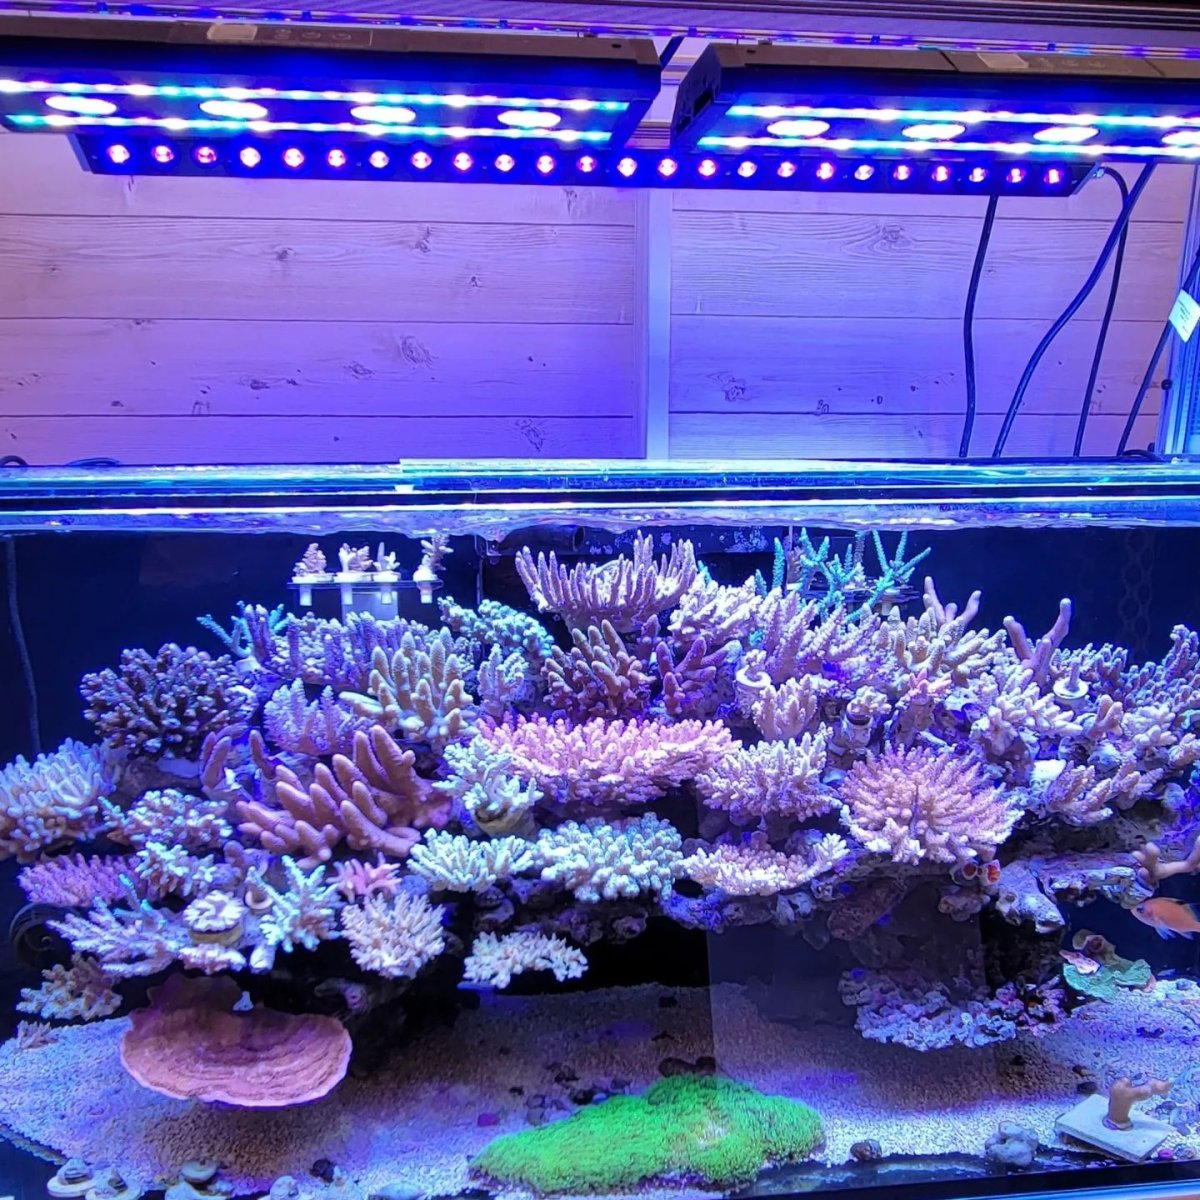 OR3 120 UV violet , OR3 blue plus Reef LED bar , 2x spectra 